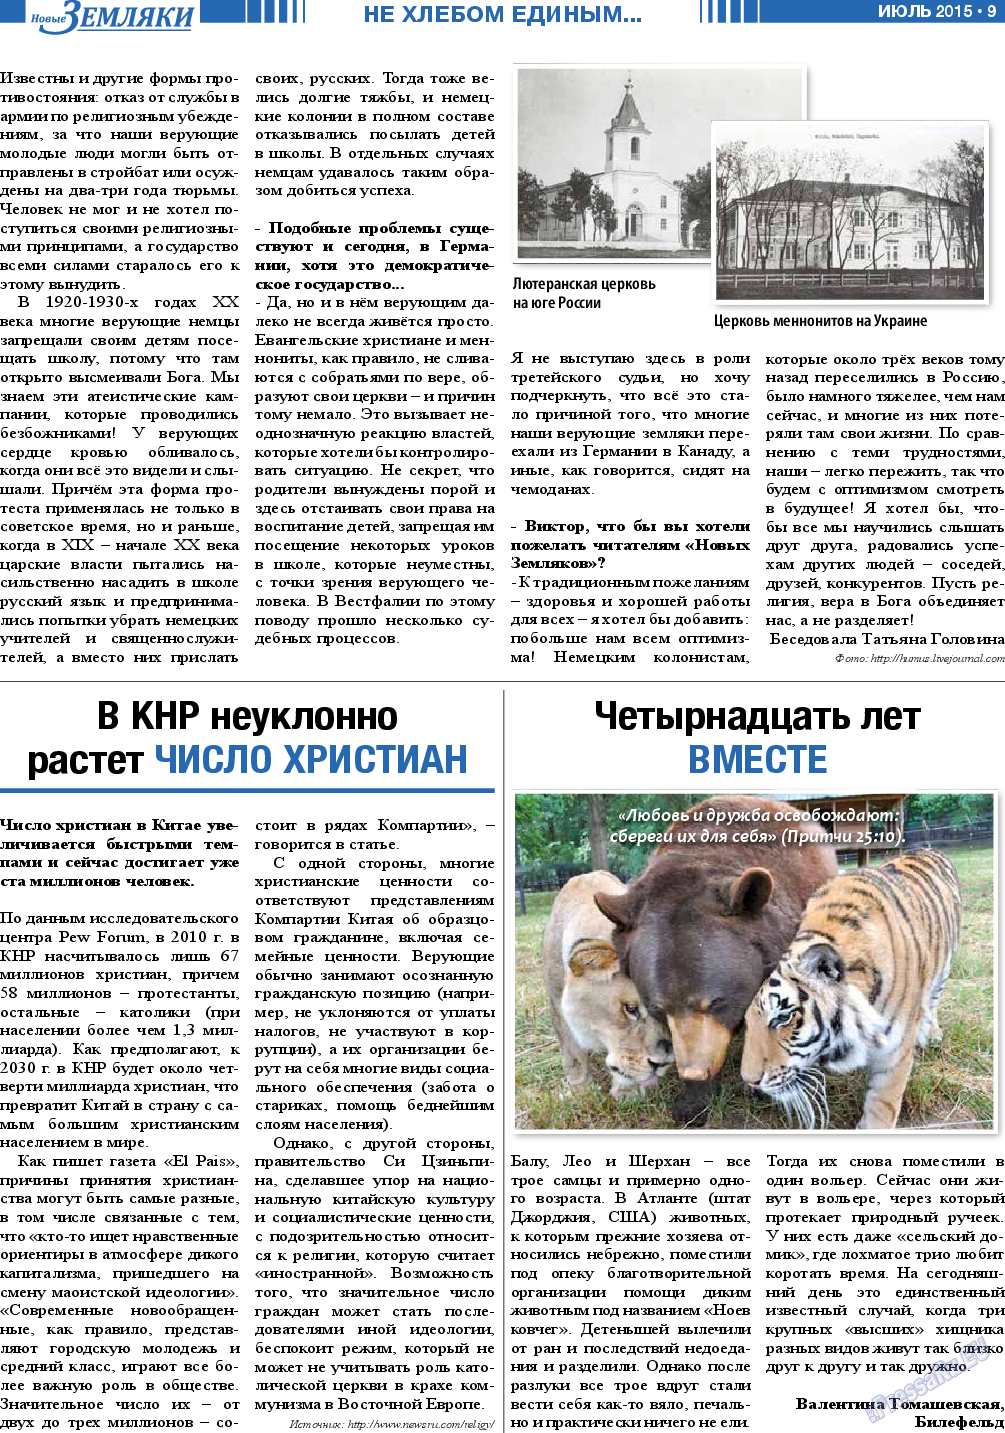 Новые Земляки (газета). 2015 год, номер 7, стр. 9